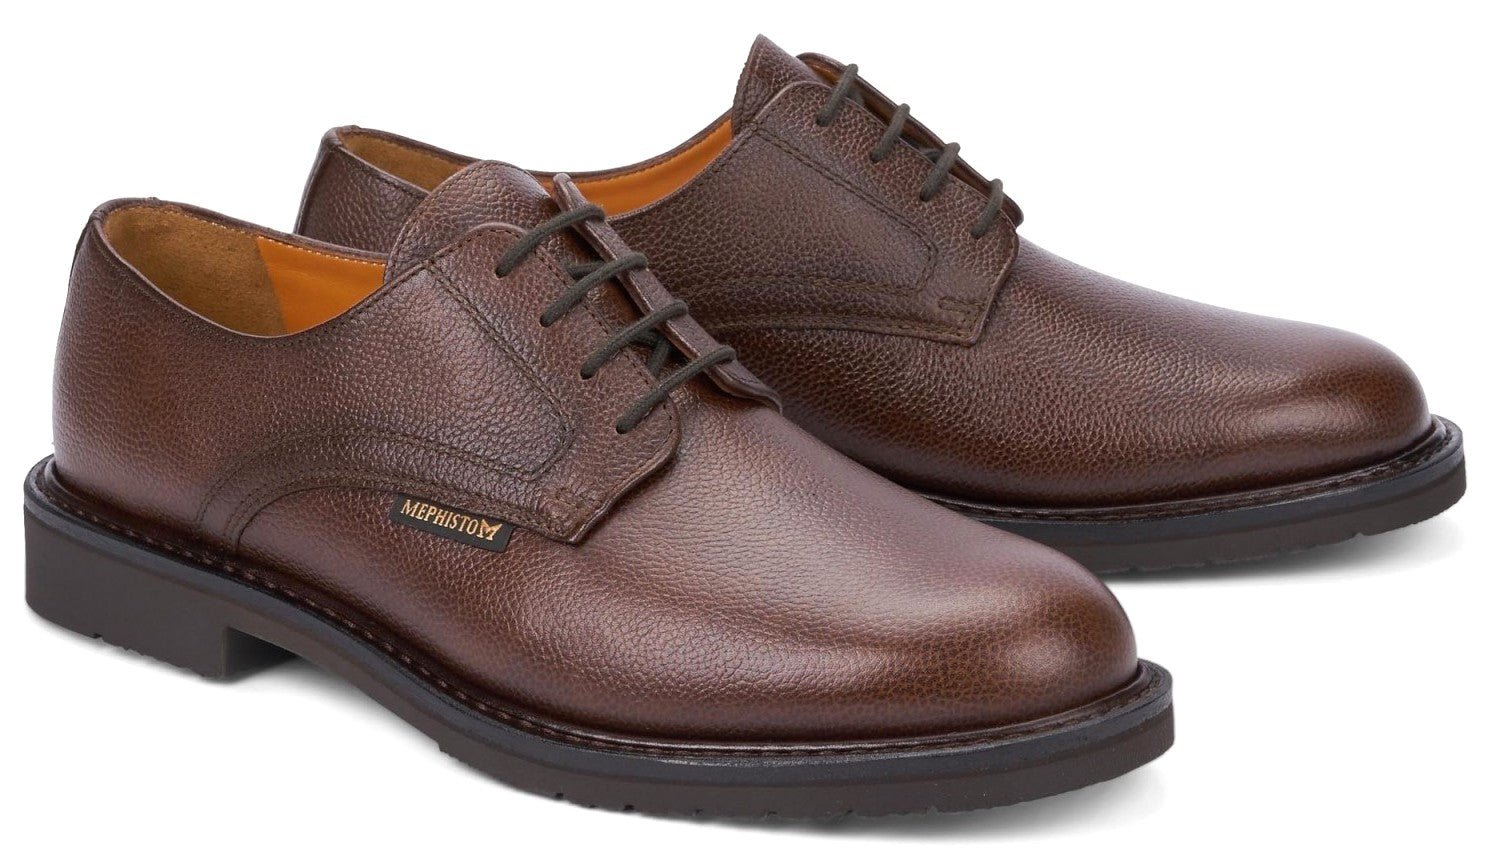 'Marlon' men's smart city shoes - Brown - Chaplinshoes'Marlon' men's smart city shoes - BrownMephisto